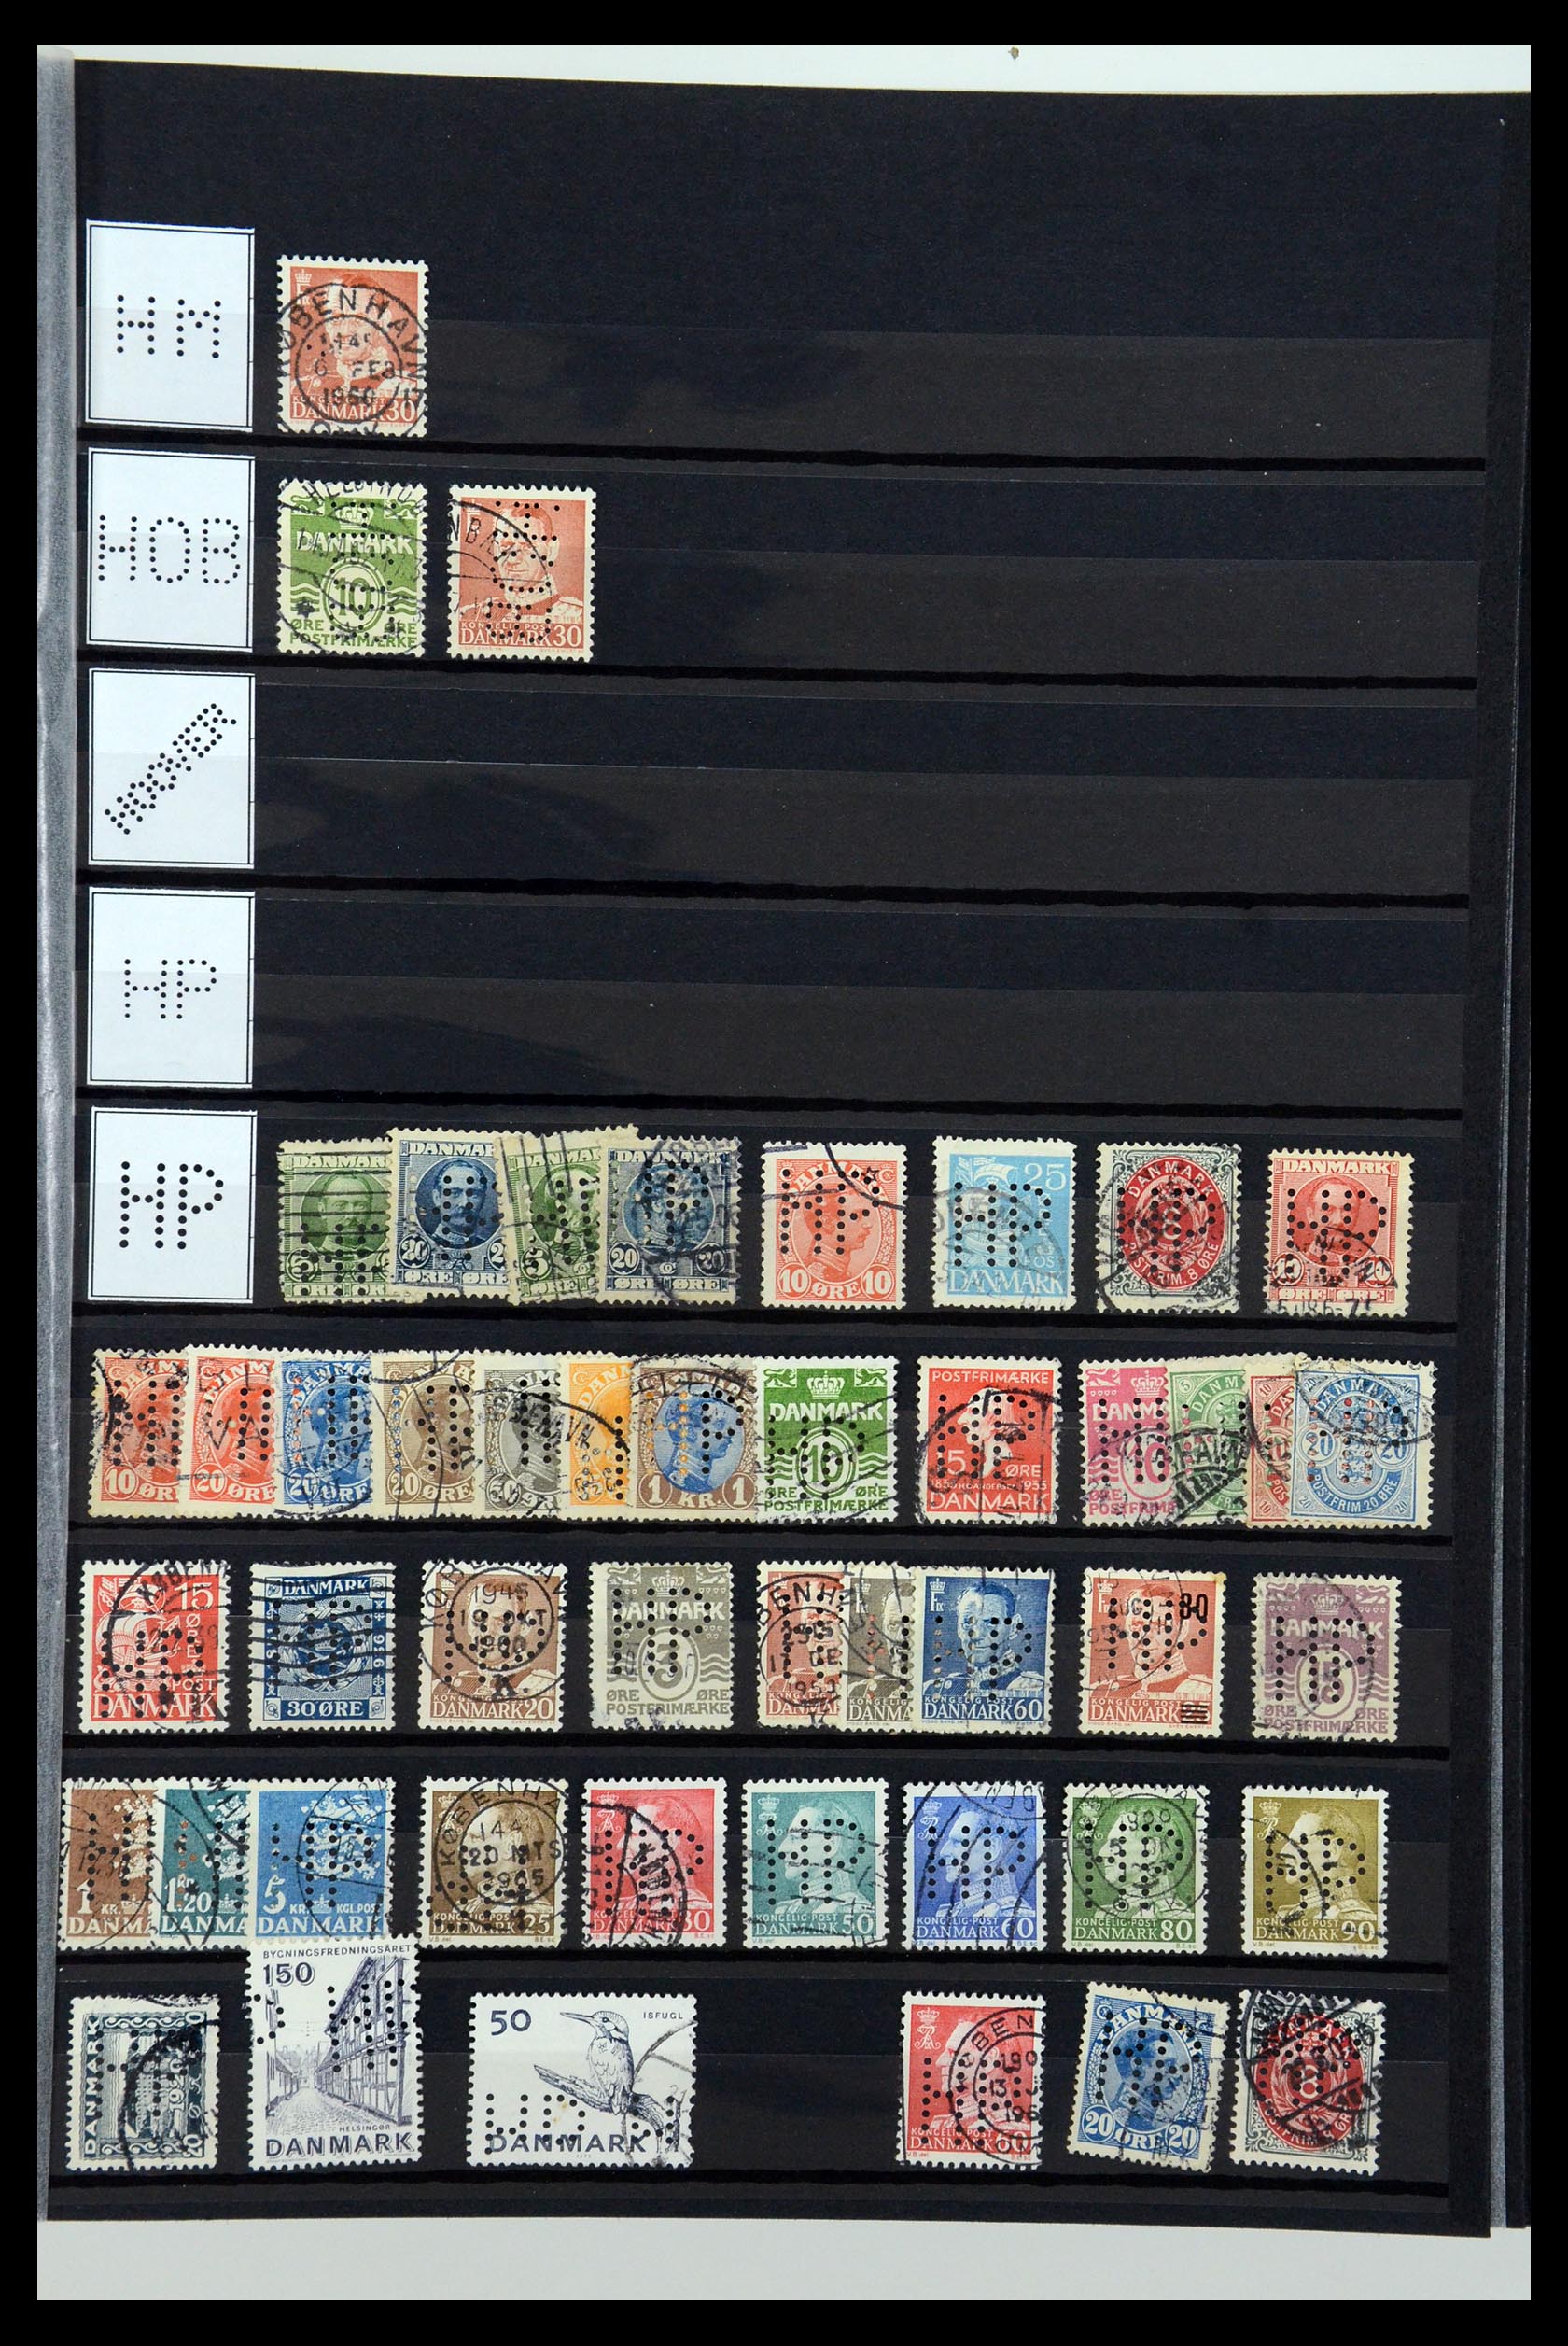 36396 133 - Postzegelverzameling 36396 Denemarken perfins.